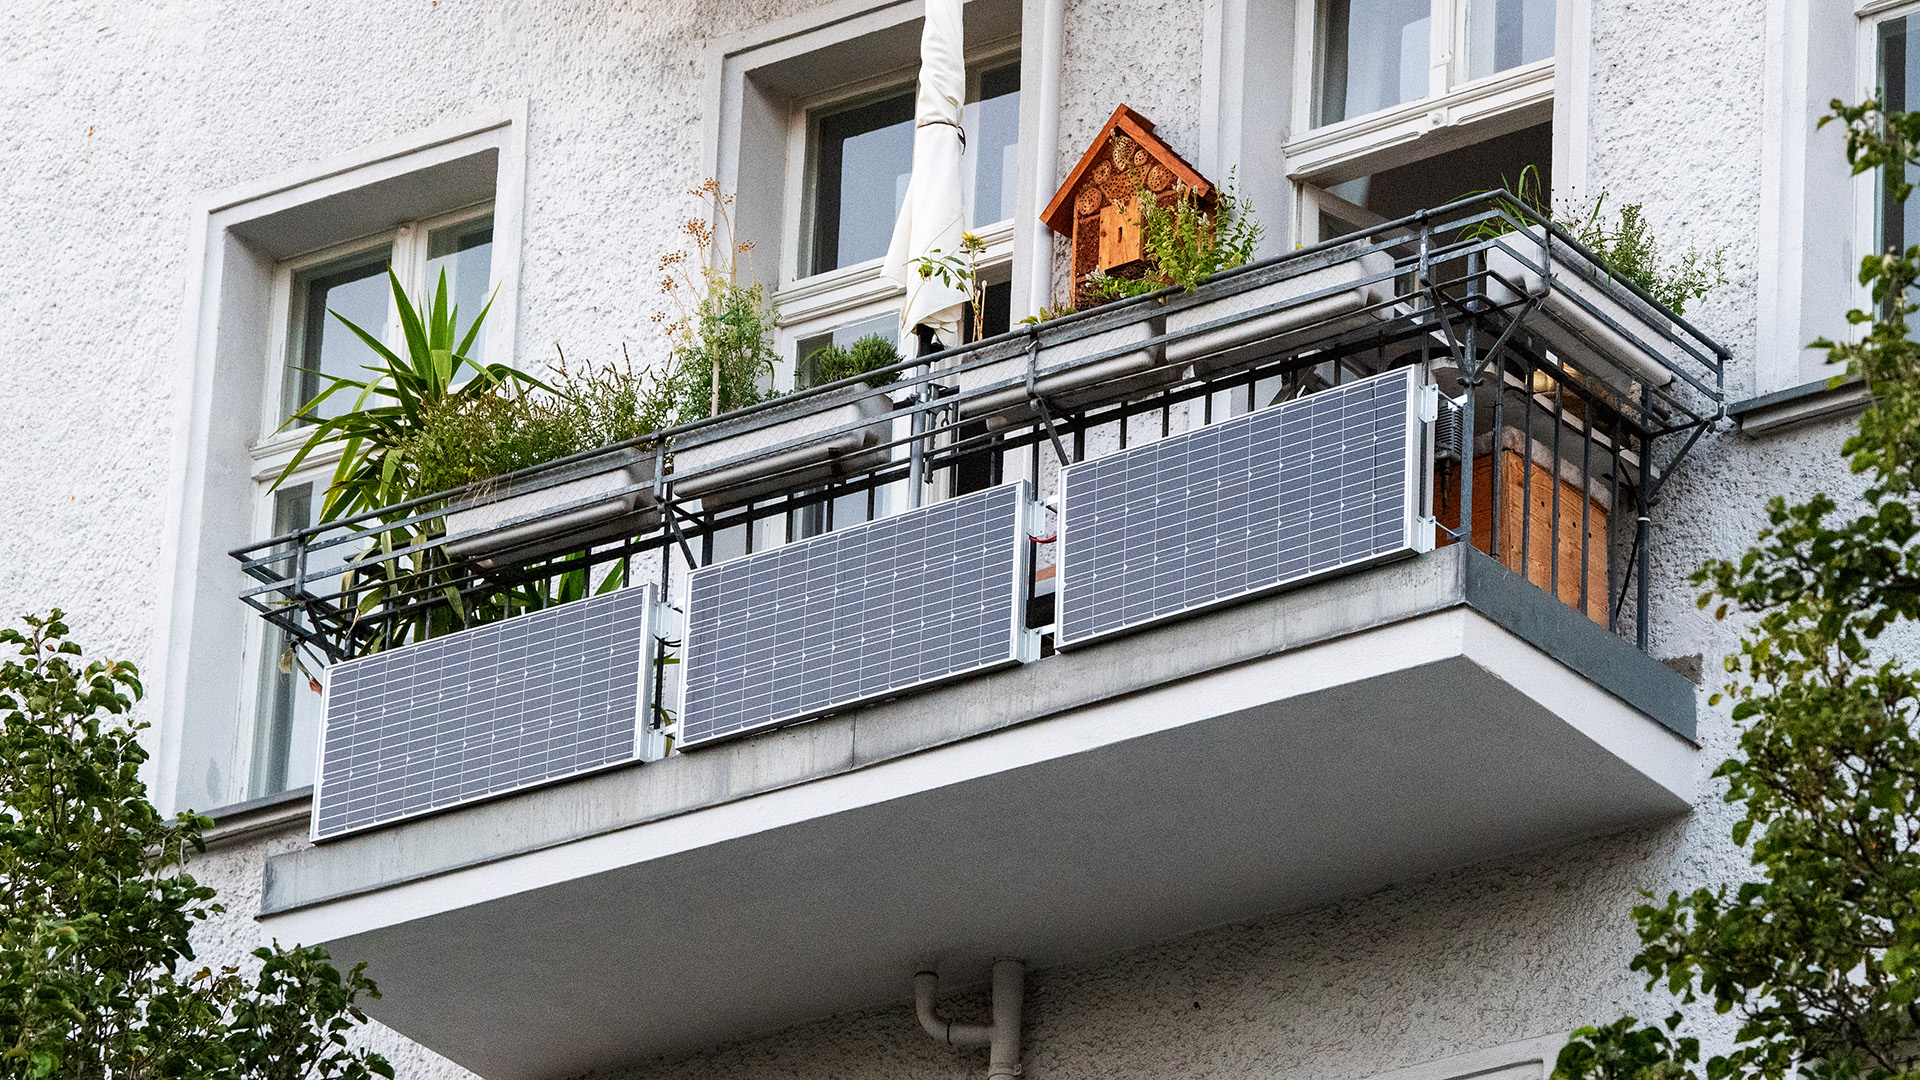 Archivbild: Solarmodule für sogenannte Balkonkraftwerke hängen an Balkonen in Berlin Friedrichshain. (Quelle: dpa/B. Diekjobst)